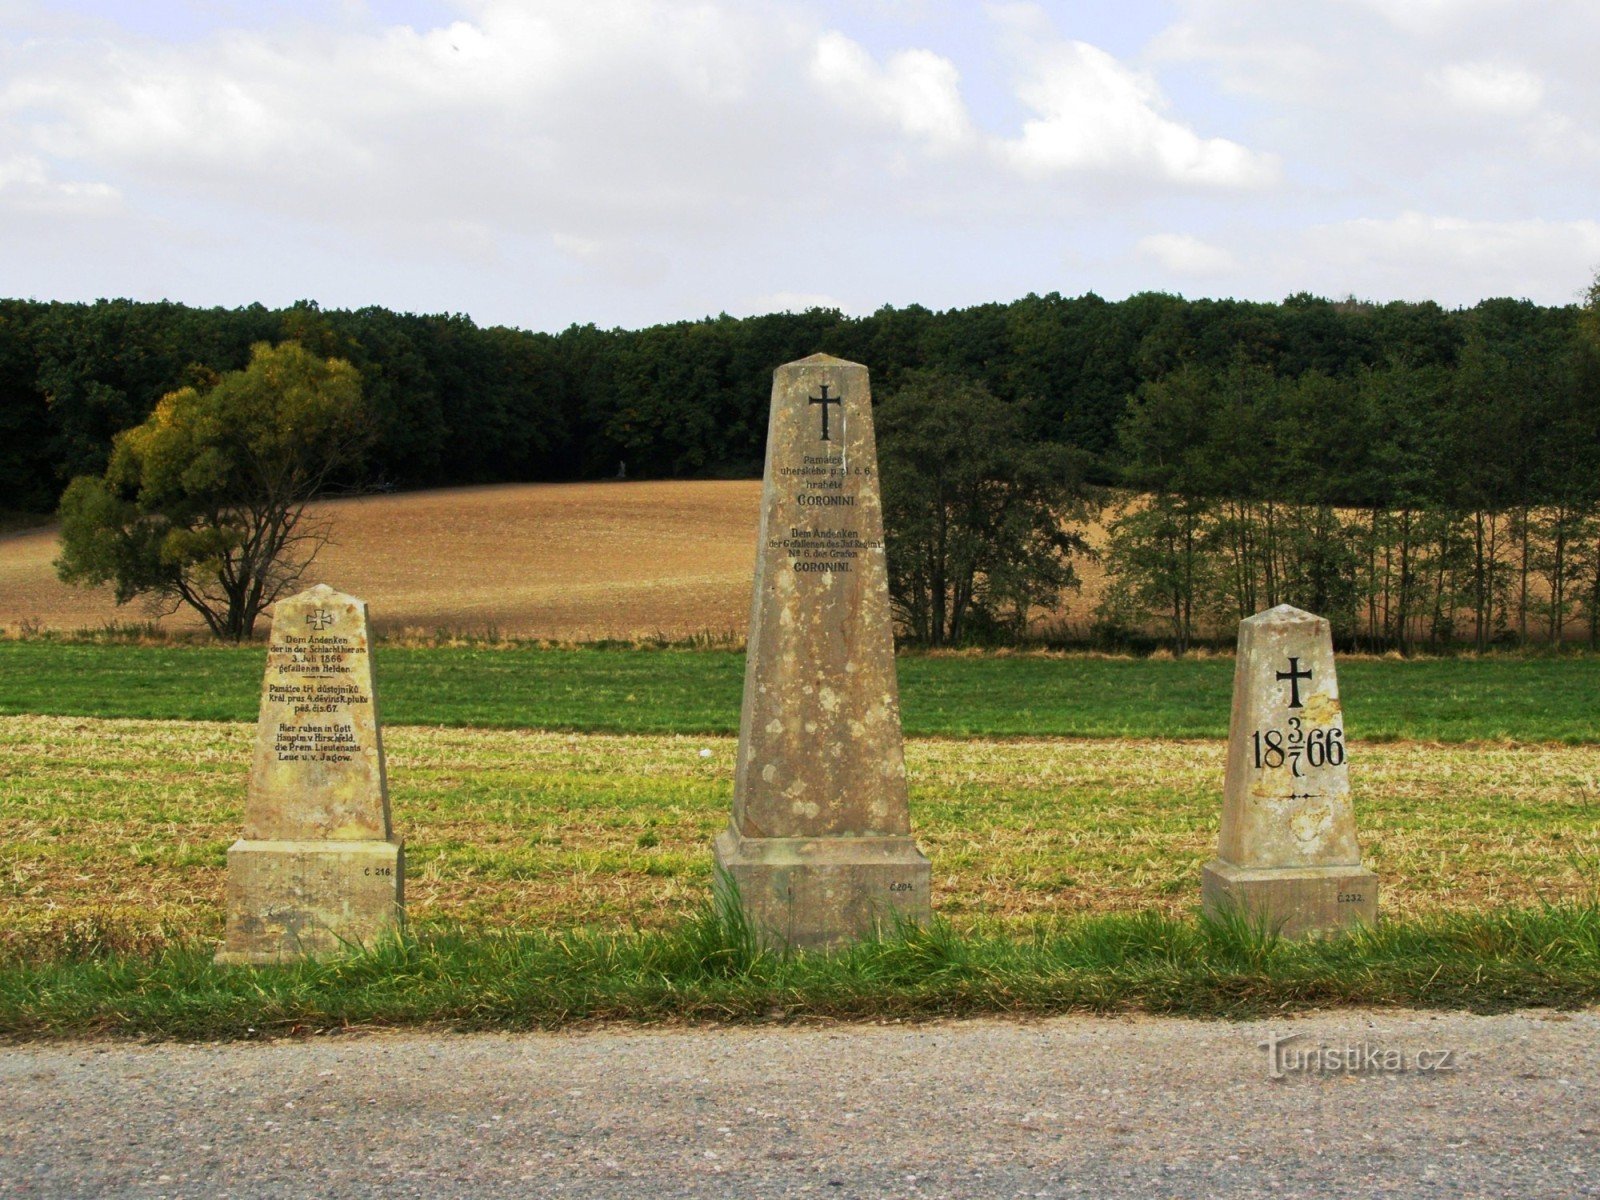 Čistěves - en uppsättning monument i norra delen av byn